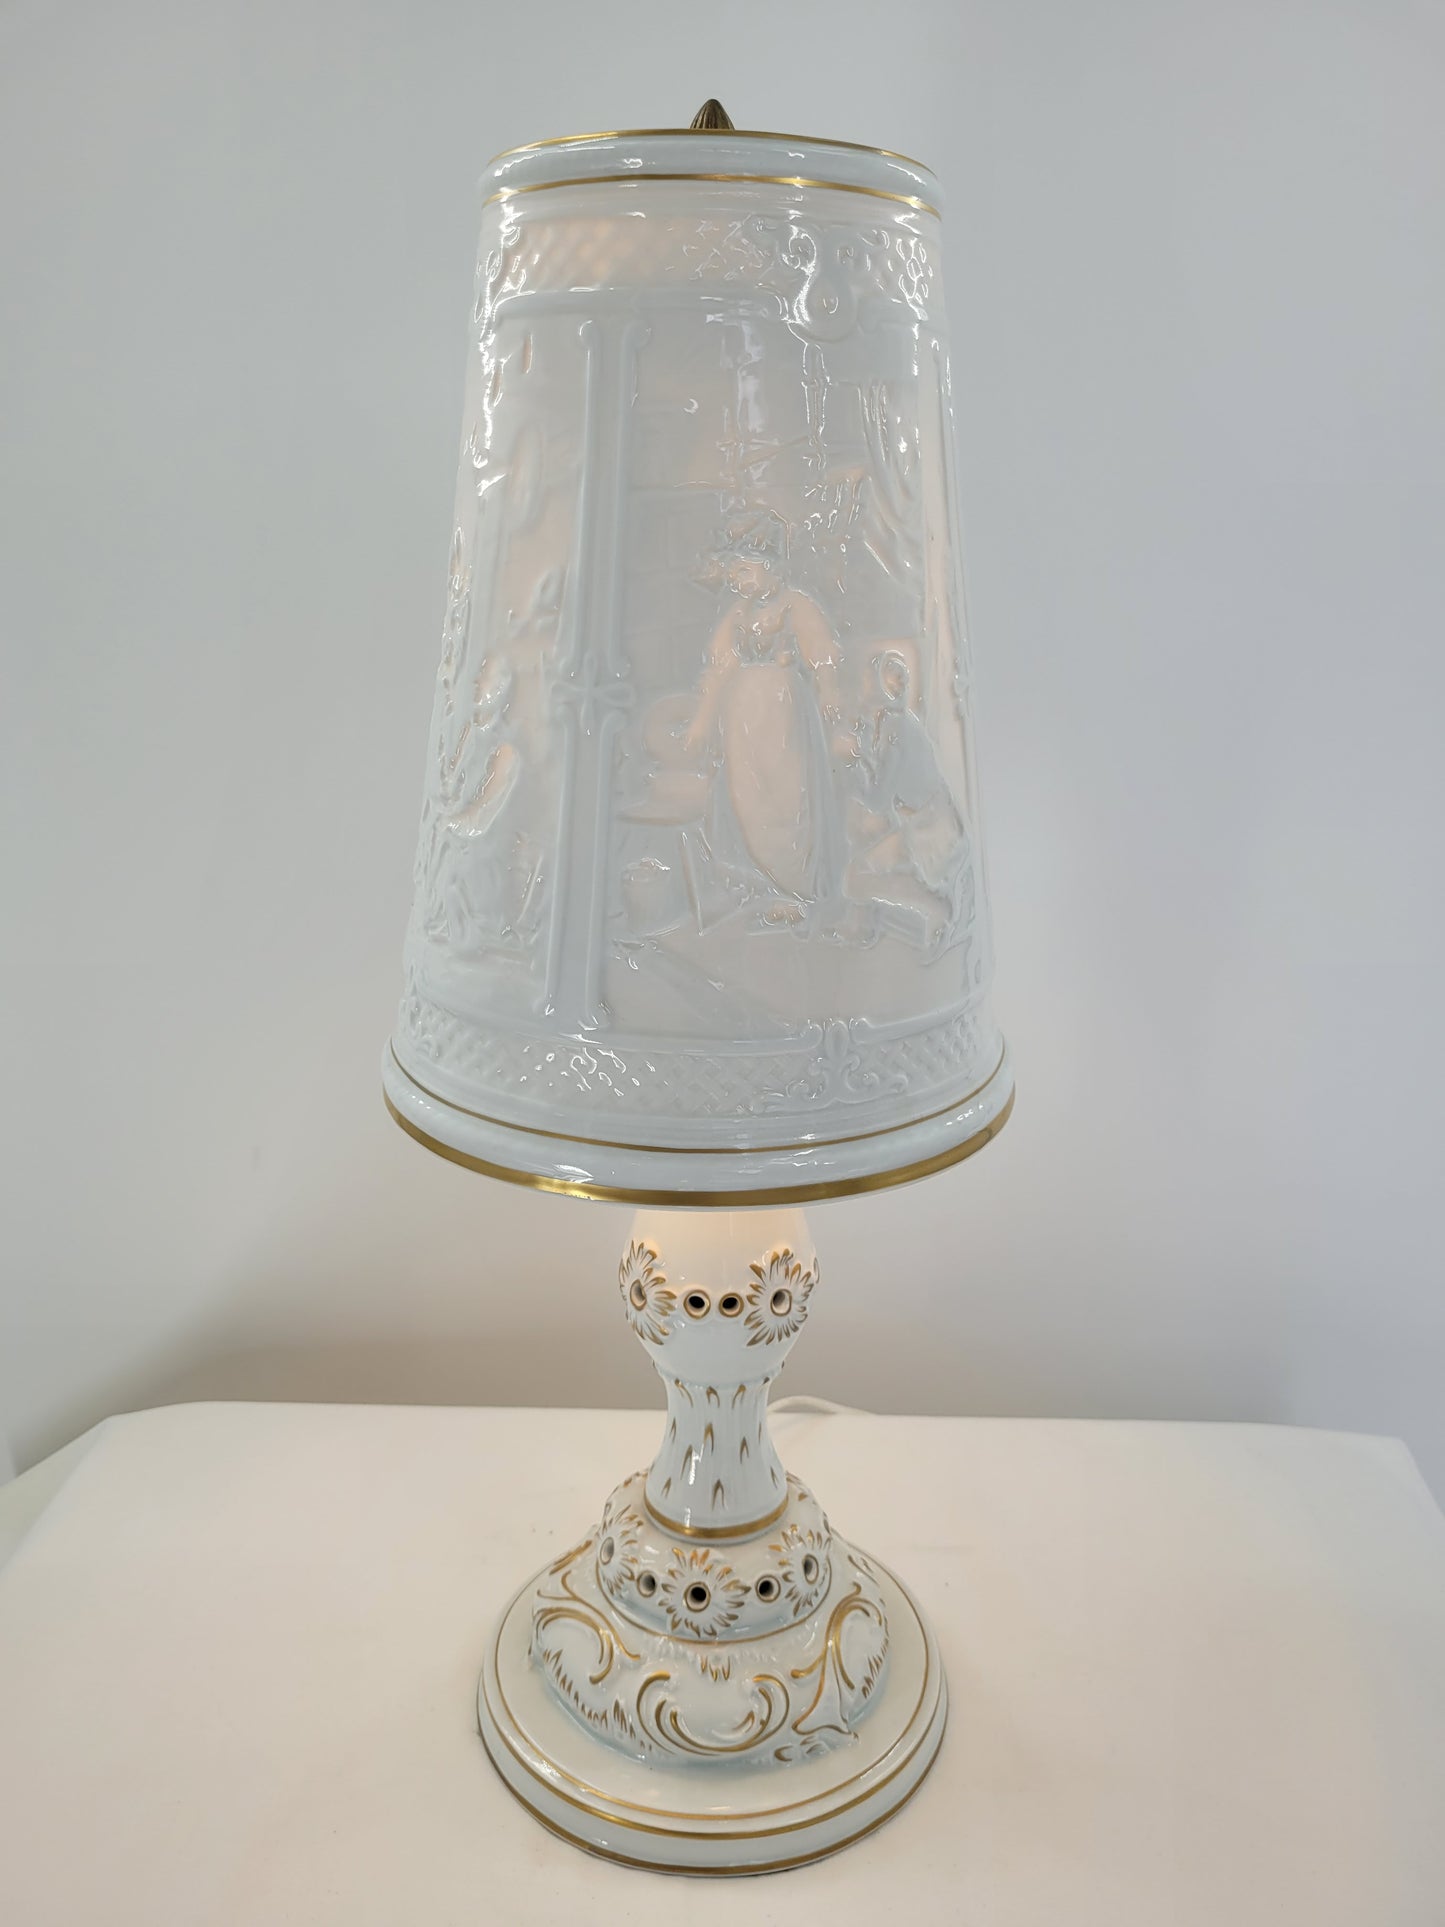 Schierholz Porzellan Tischlampe, Signiert J. Freitag, Reliefarbeiten